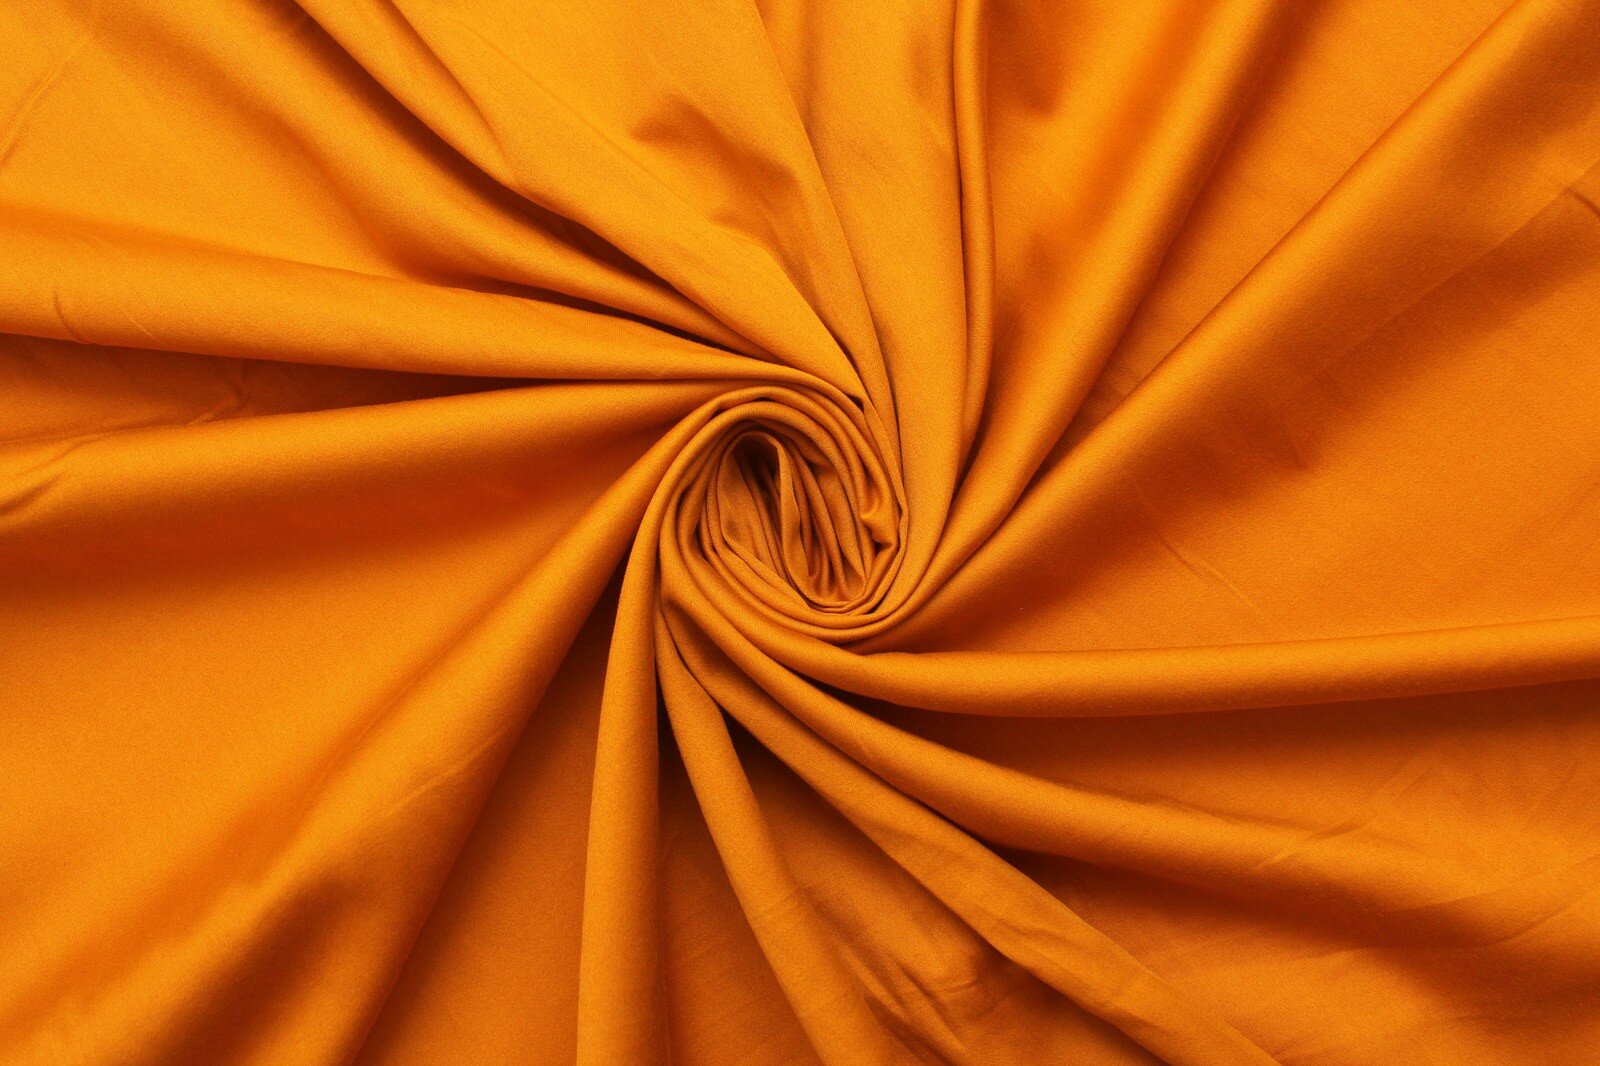 Ткань Сатин стрейч жёлто-оранжевый 0,5 м